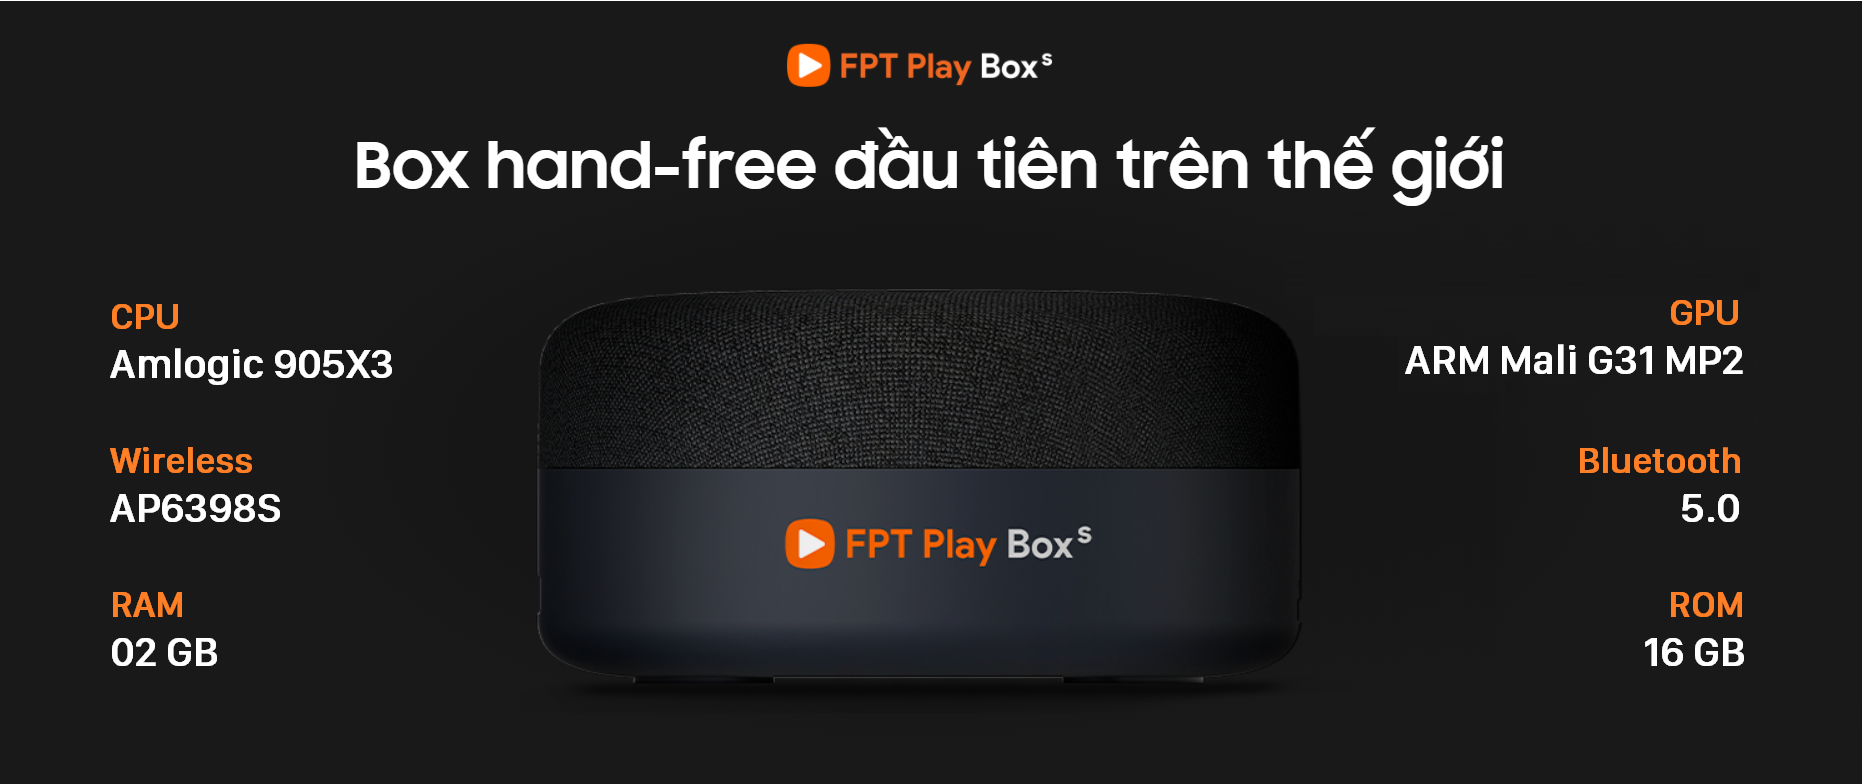 Android TV Box FPT Play Box S T590 CHÍNH HÃNG- Không thuê bao